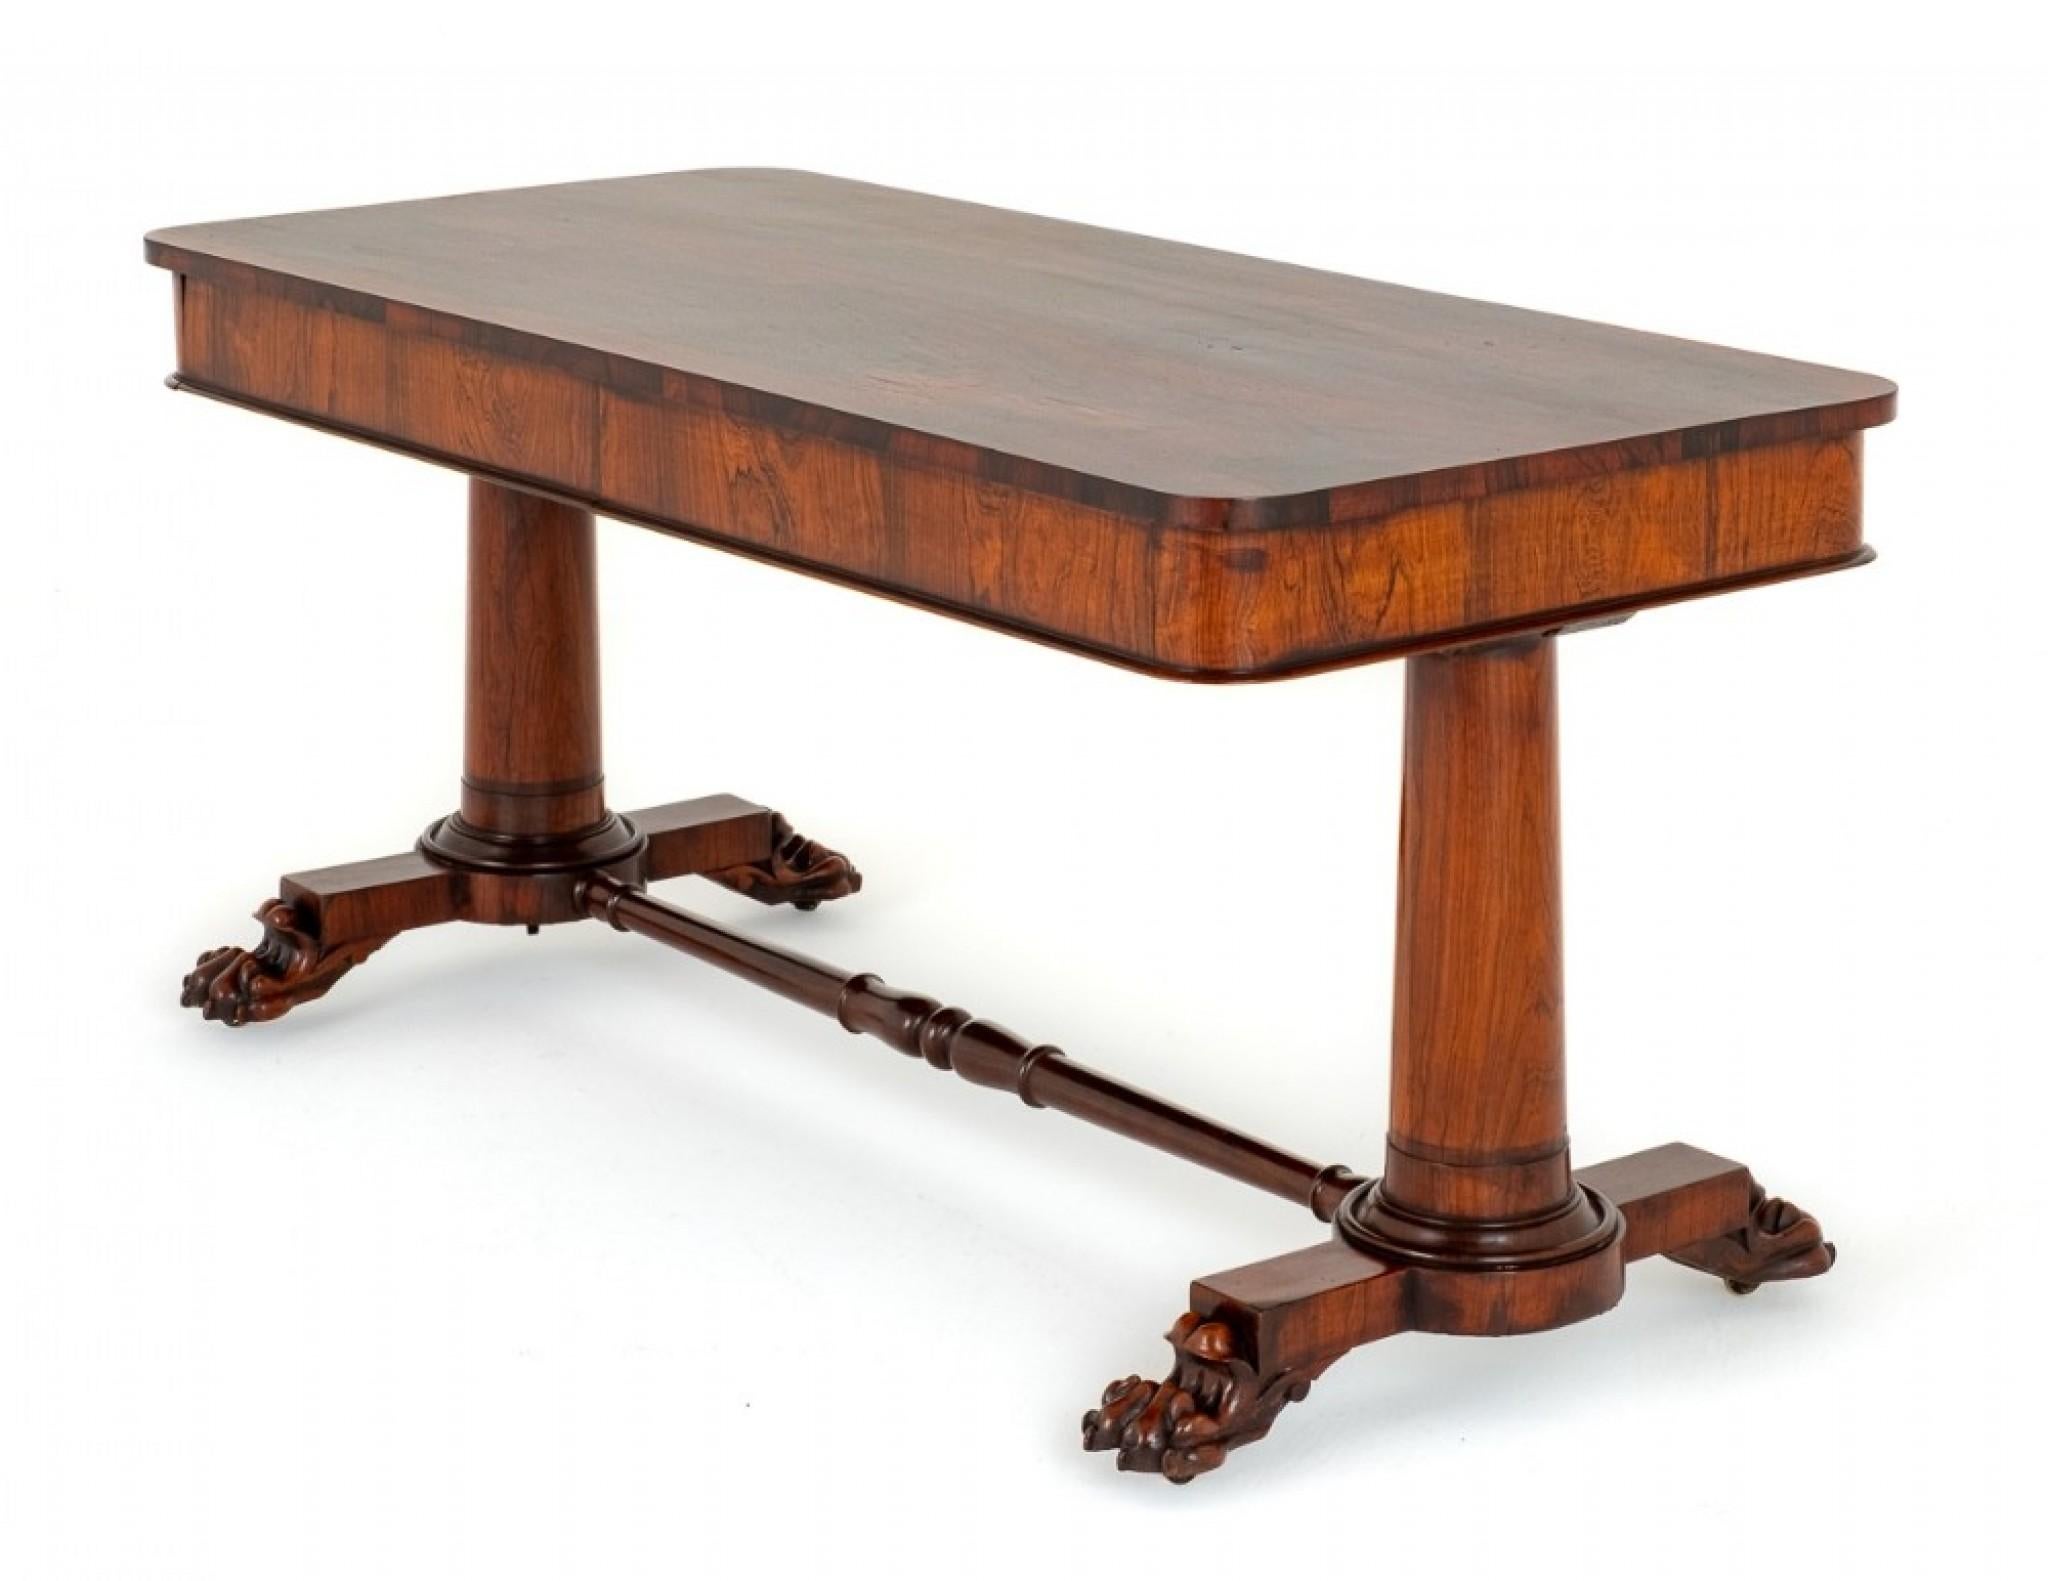 Table de bibliothèque William IV.
Circa 19ème siècle
Le plateau de la table est orné de magnifiques bois de rose de Rio.
La table a deux tiroirs en acajou (notez les fines queues d'aronde).
La table est surélevée par des pieds en patte de lion bien